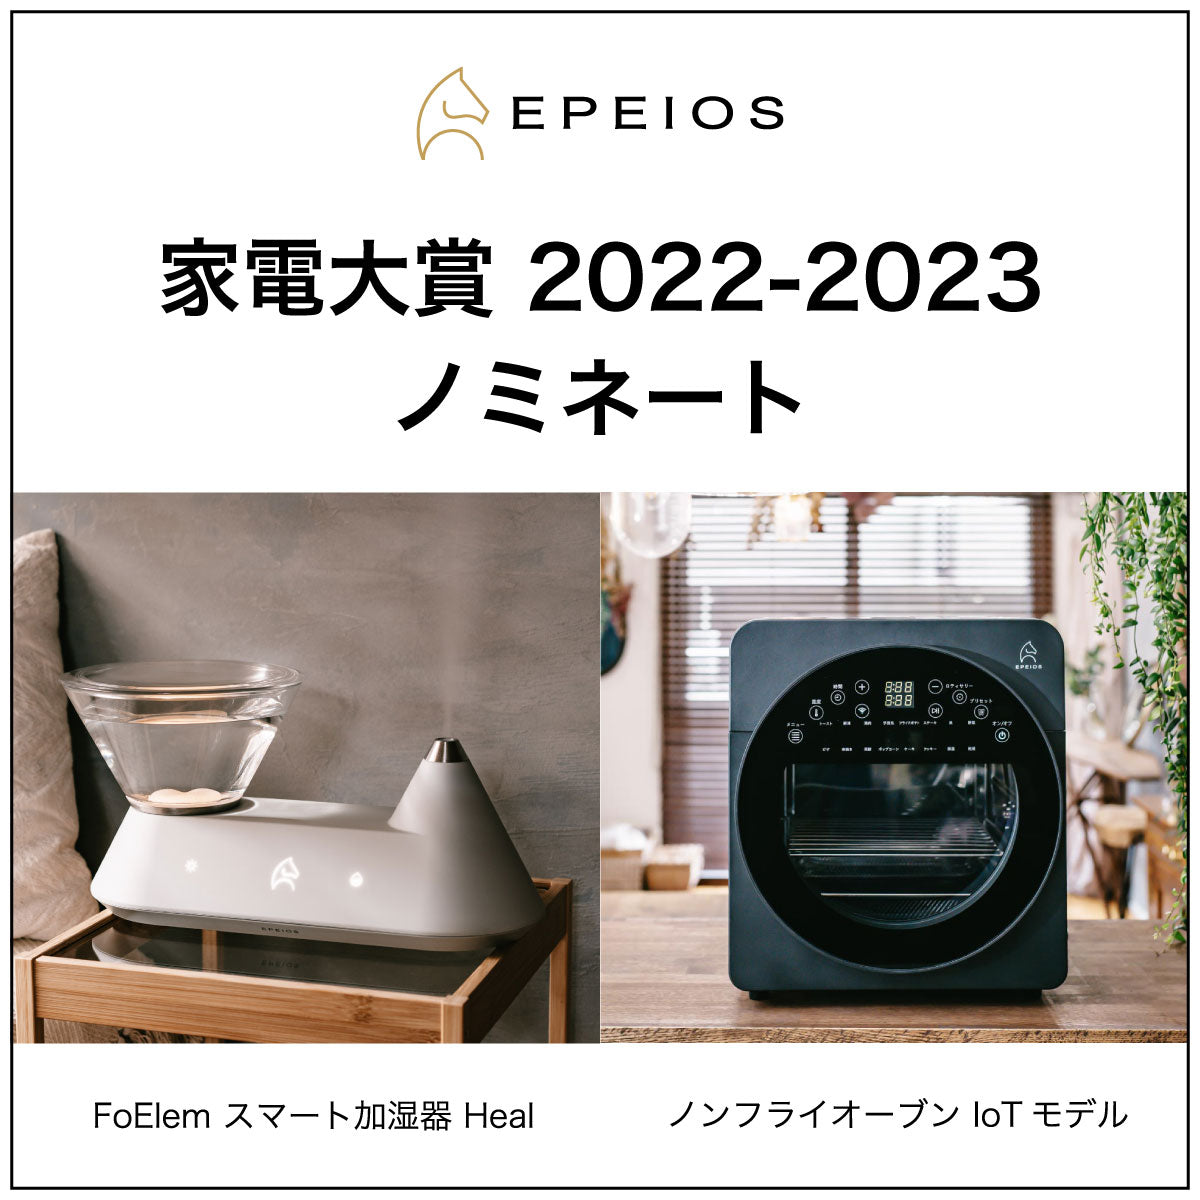 家電大賞 2022-2023 ノミネートエペイオス(Epeios) エアーオーブン